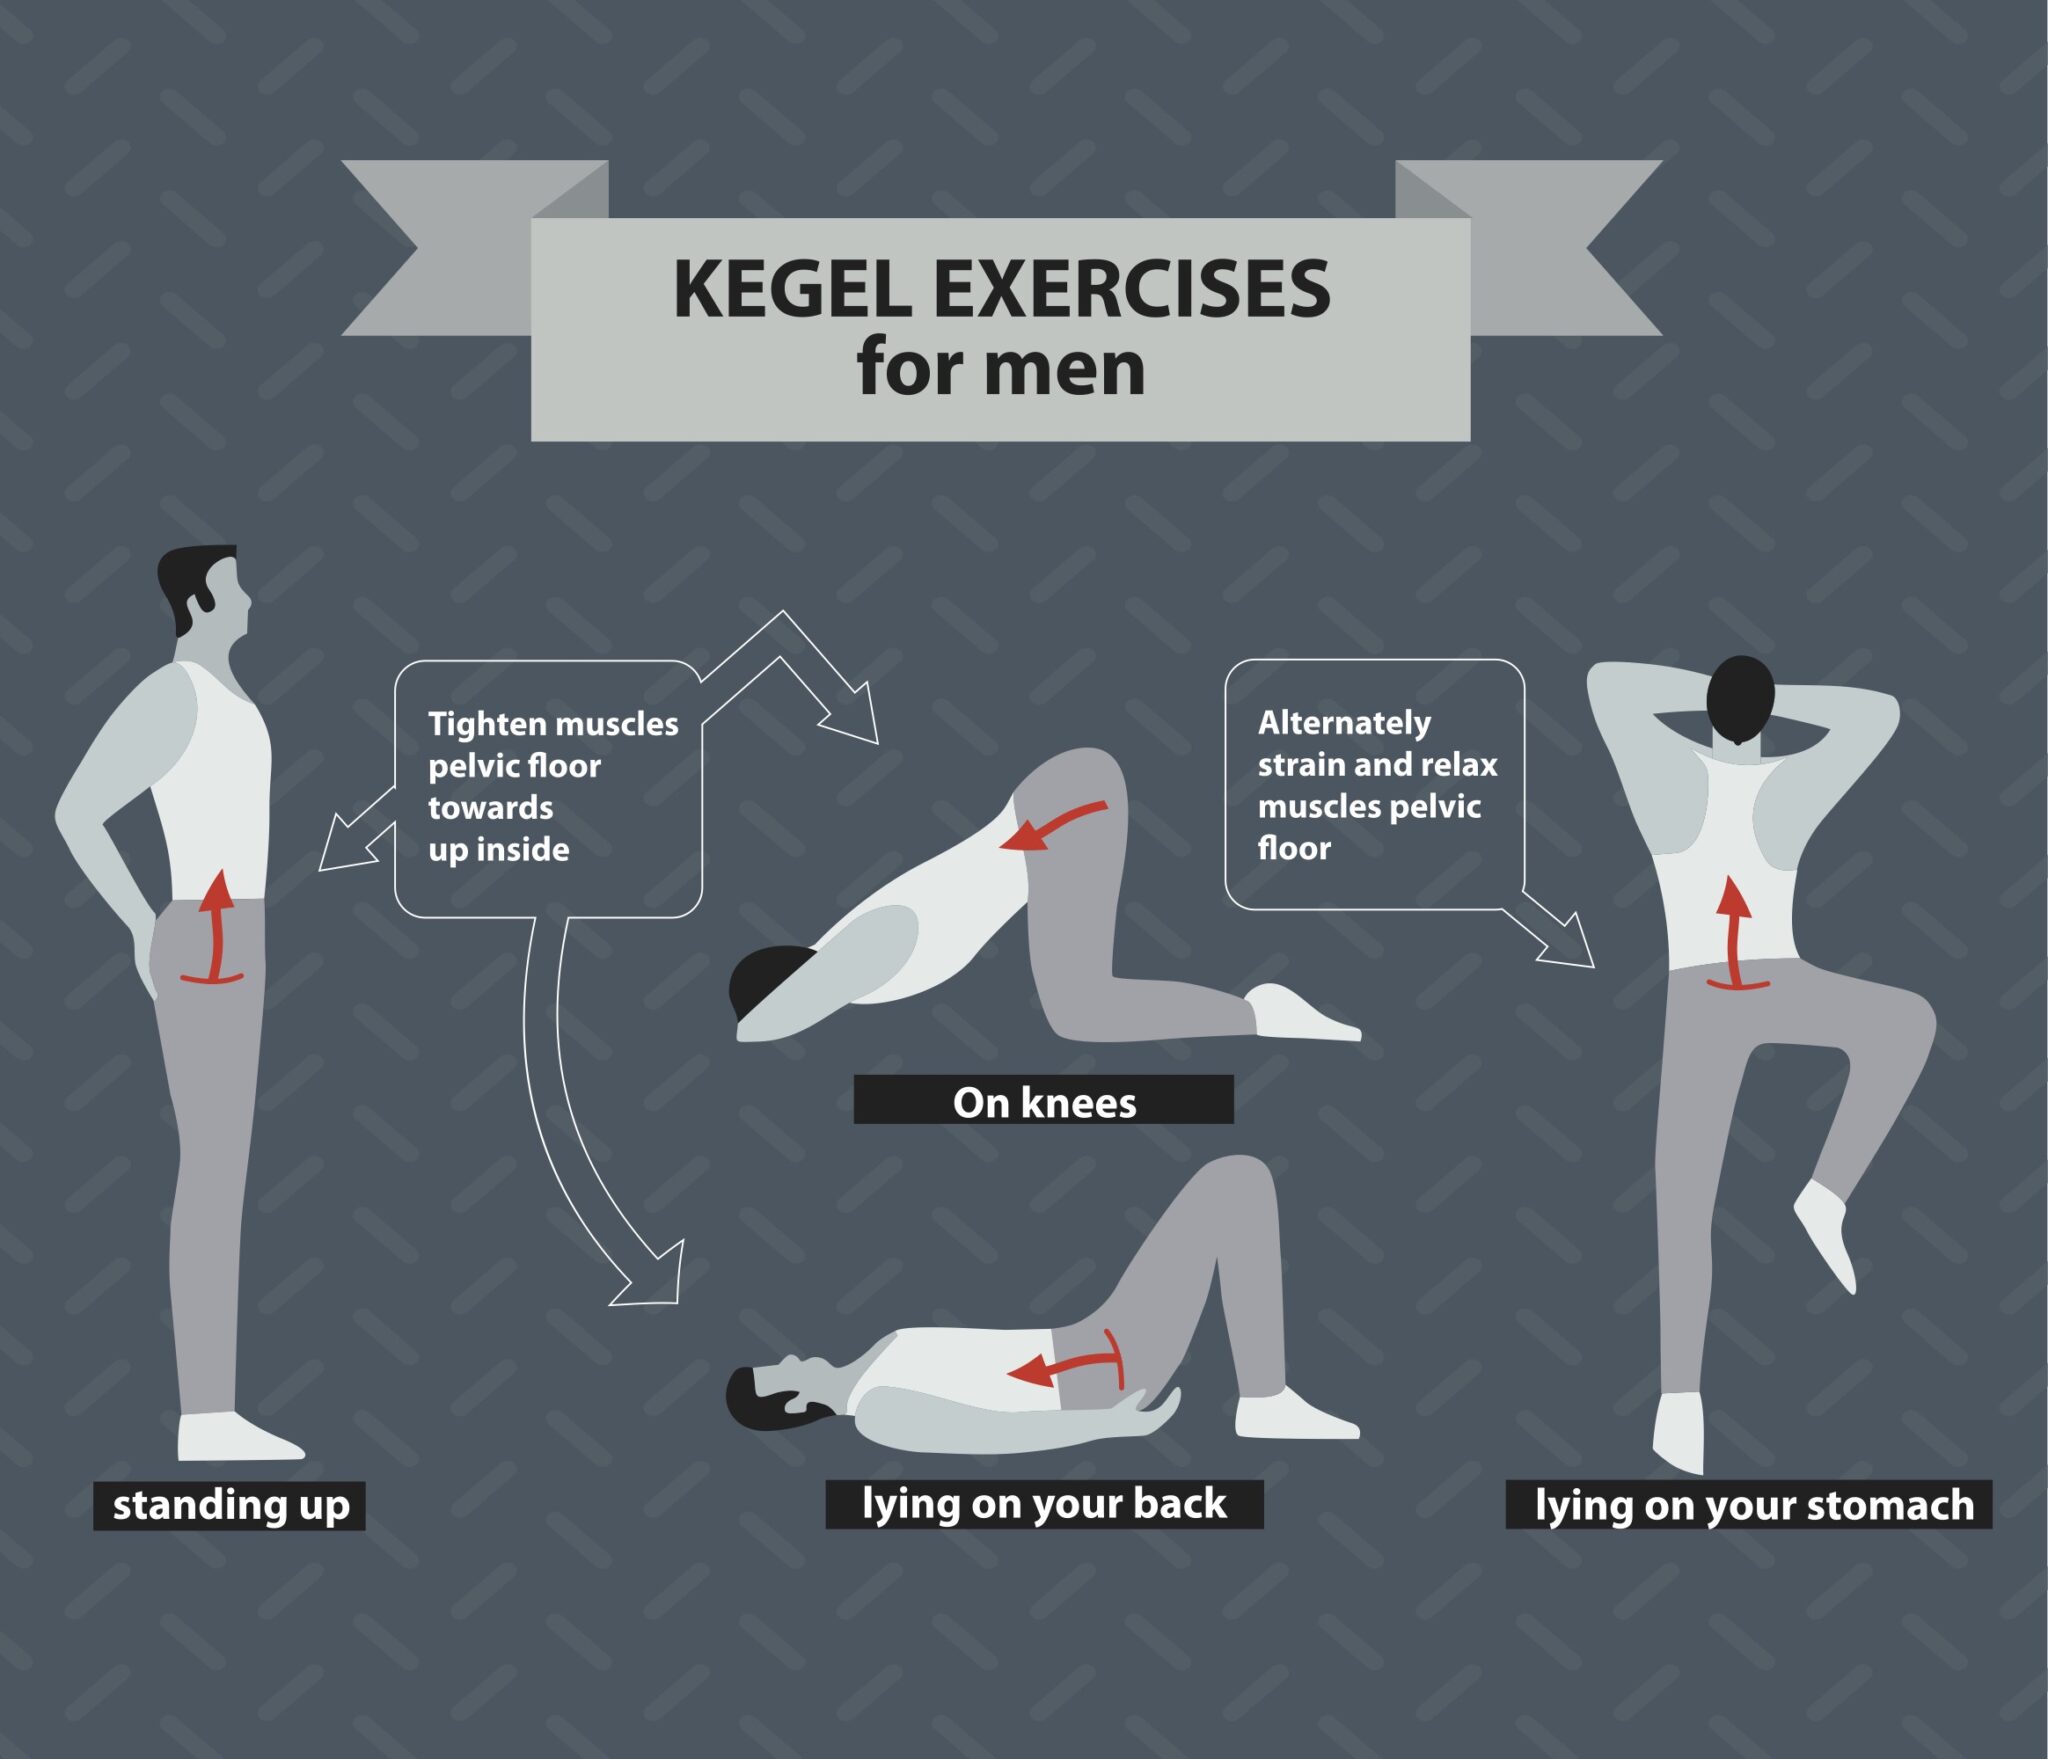 Do Kegel Exercises Work?